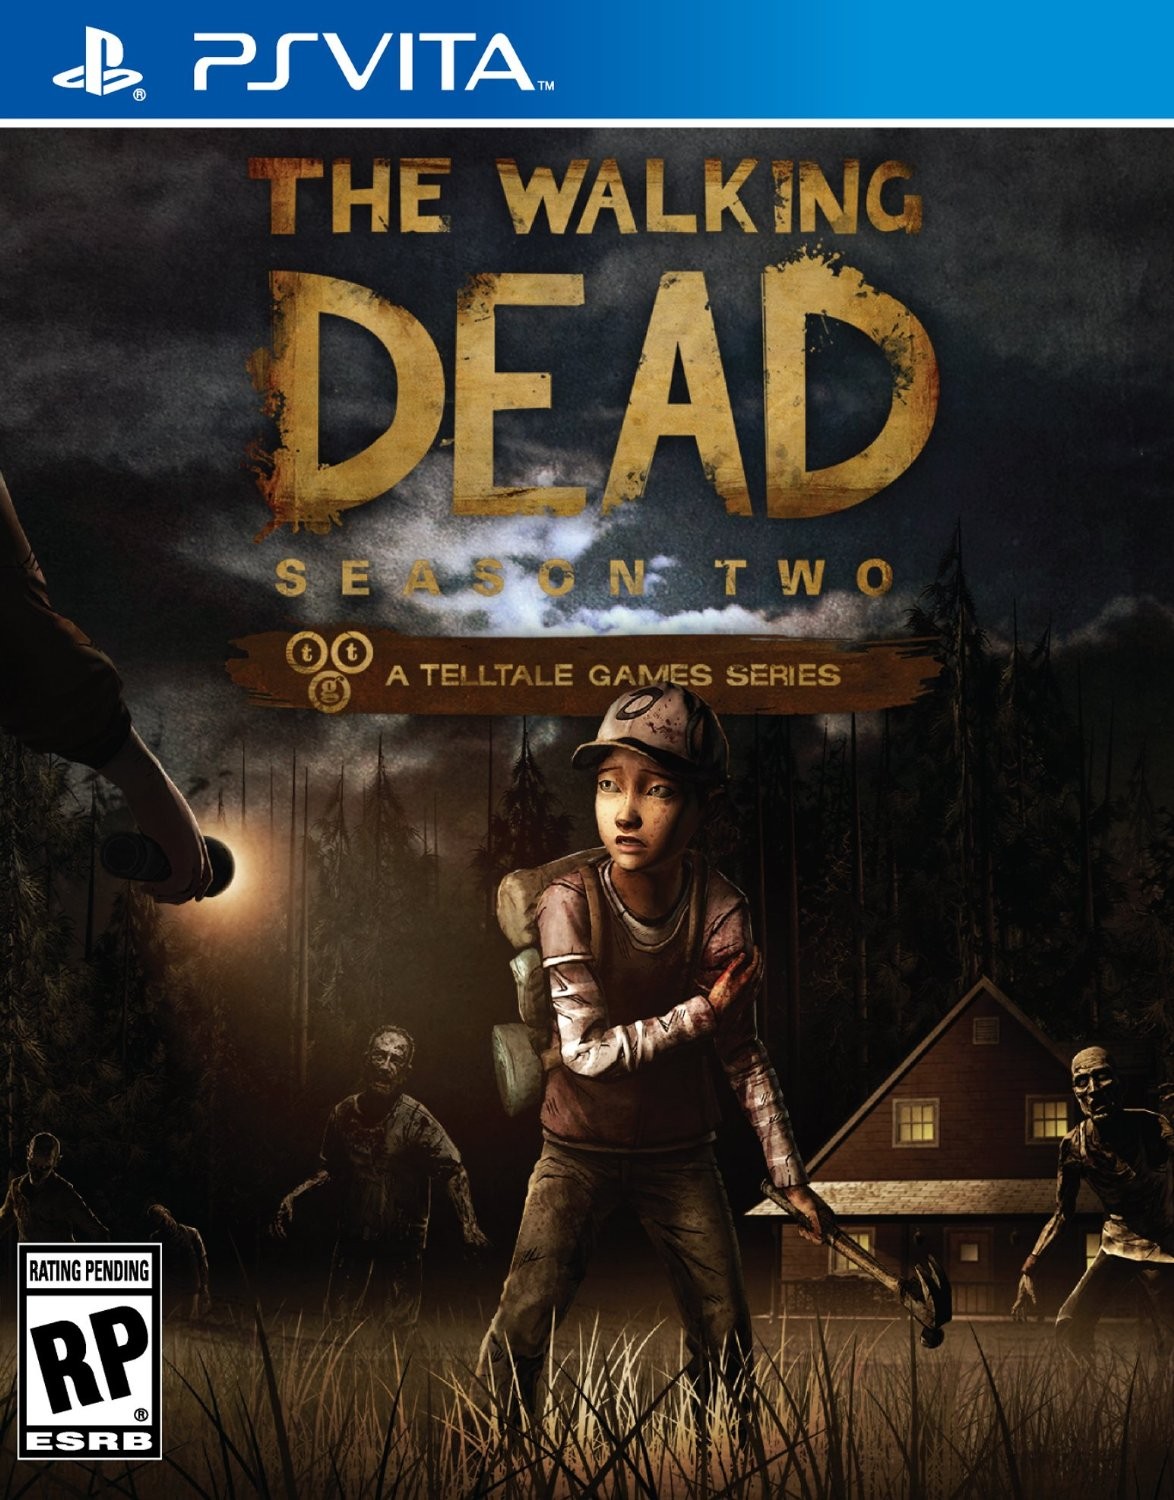 Jogo PS4 The Walking Dead: Season Two